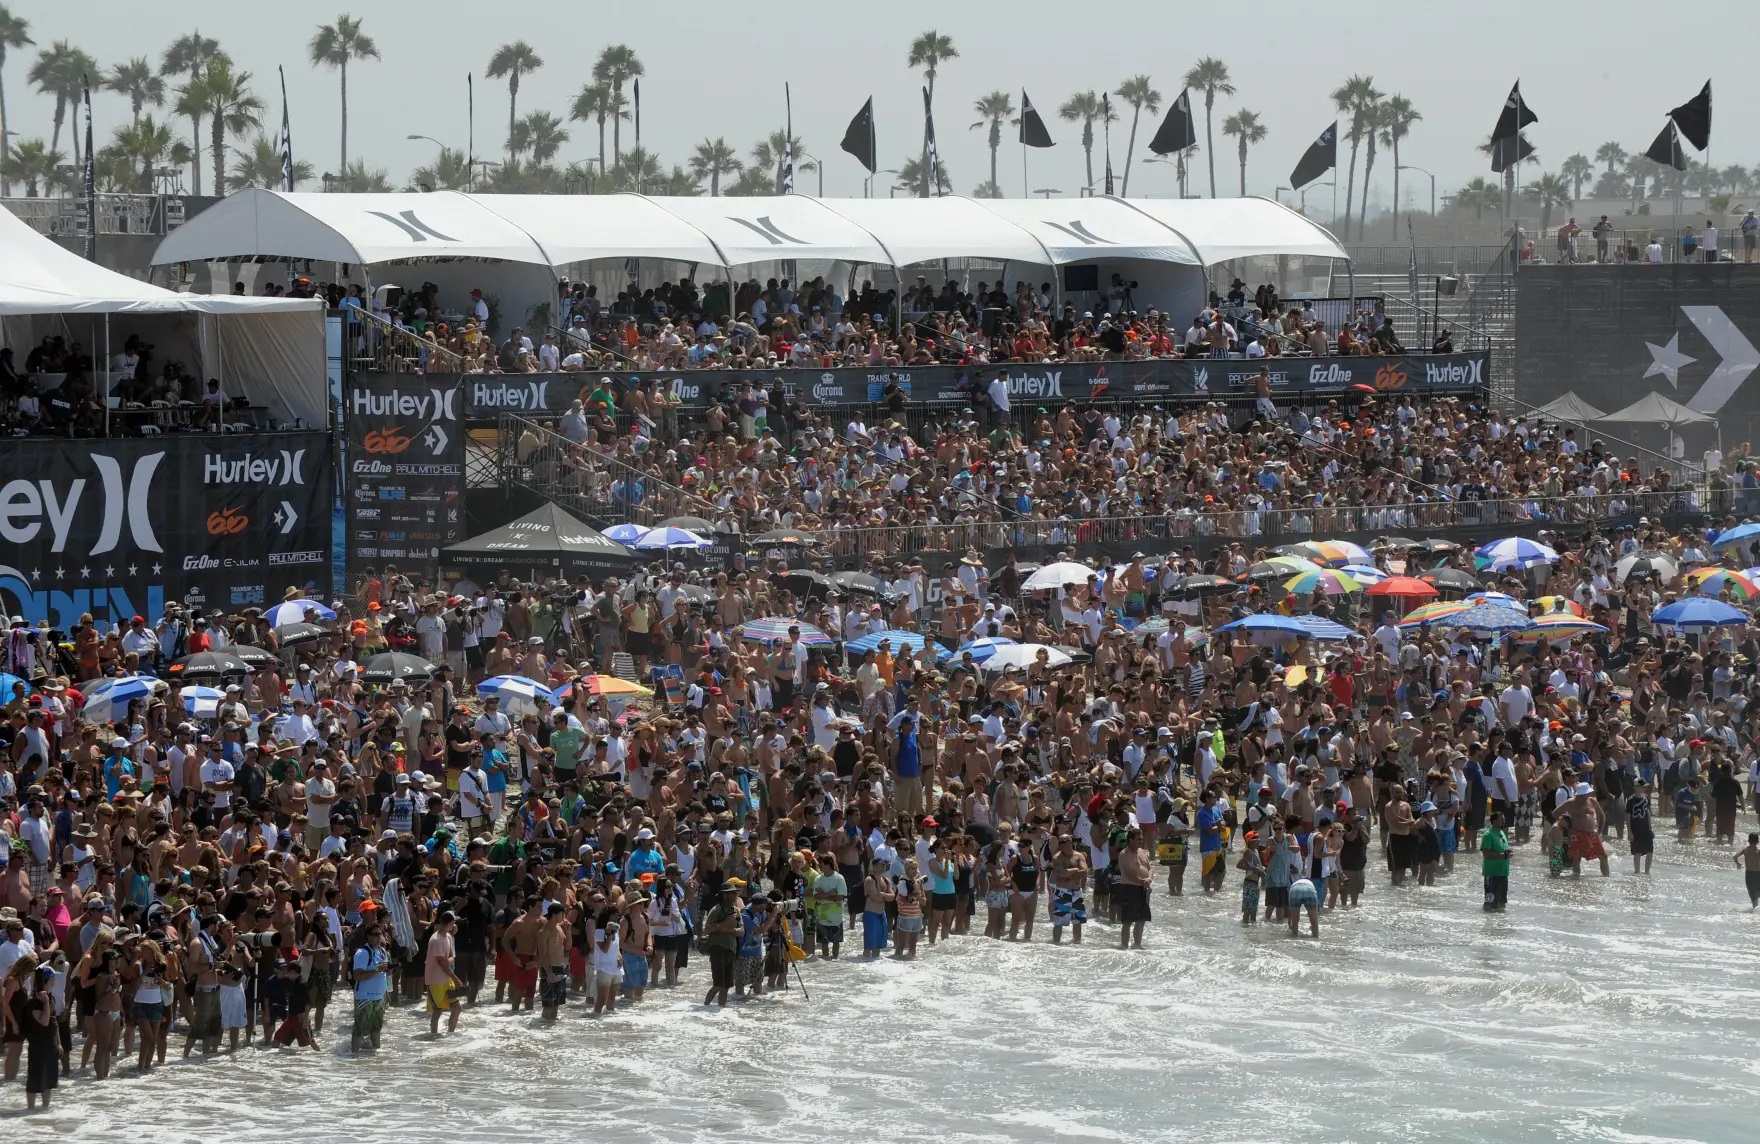 maior campeonato de surfe do mundo